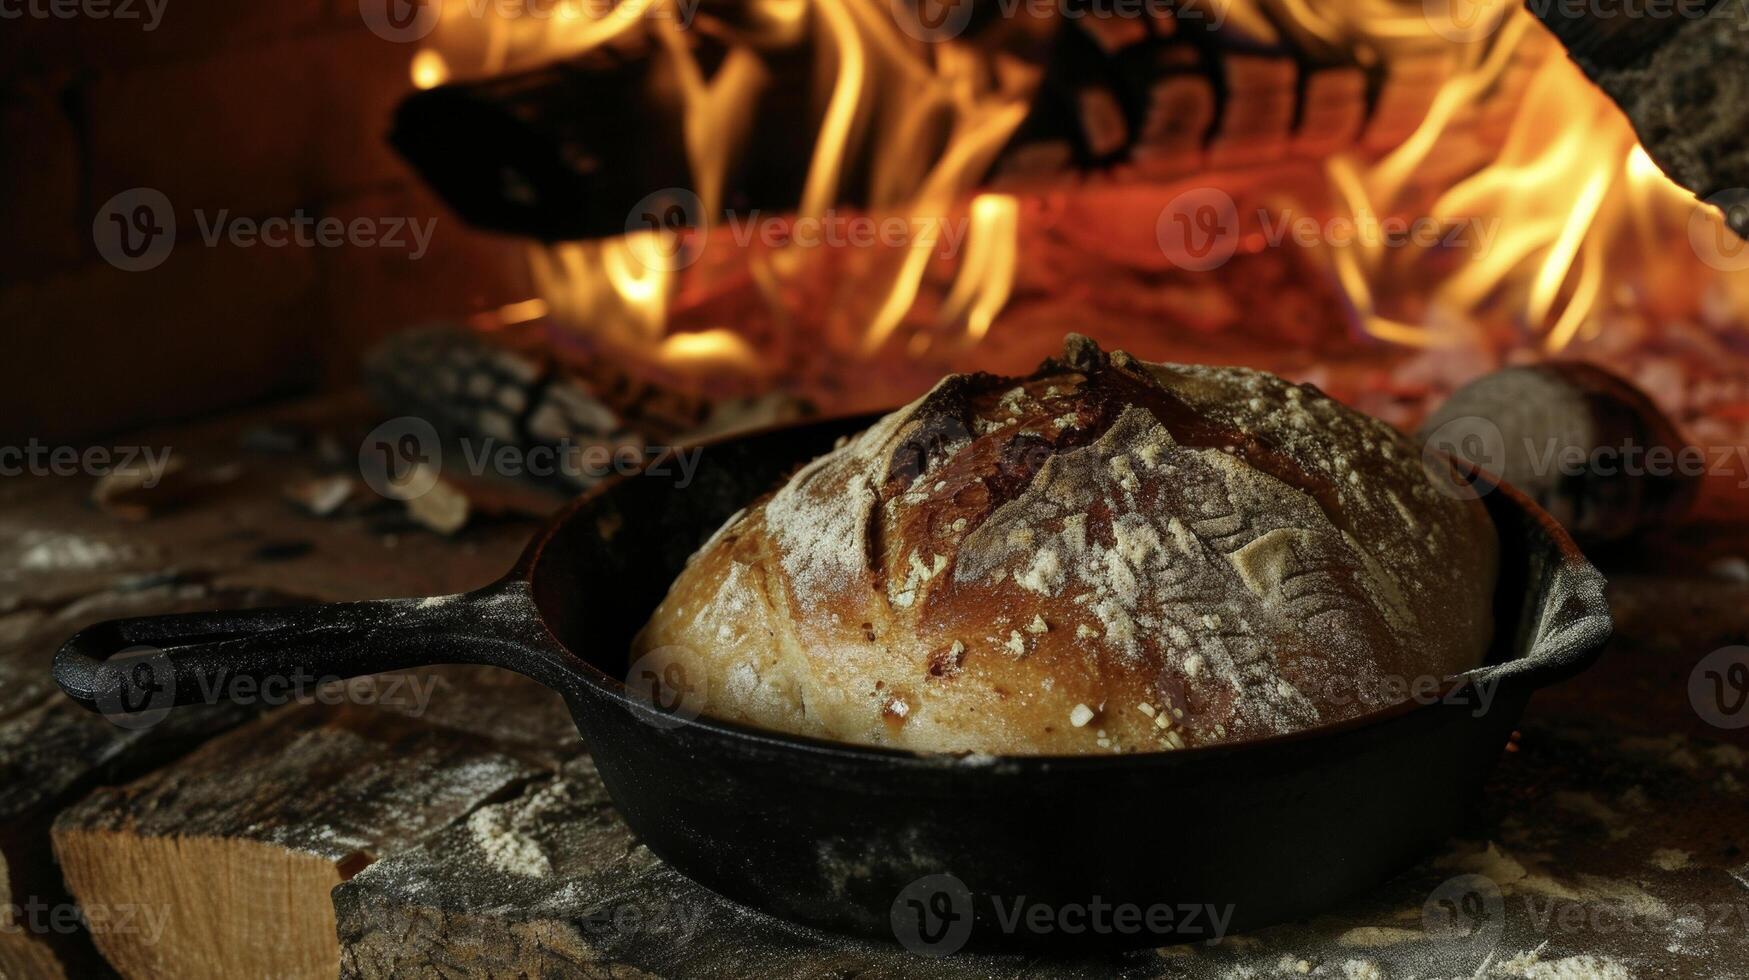 temidden van de flikkeren vlammen een brood van deeg stijgt in een gips ijzer pan transformeren in een heerlijk en hartelijk brood perfect voor een haardvuur maaltijd foto